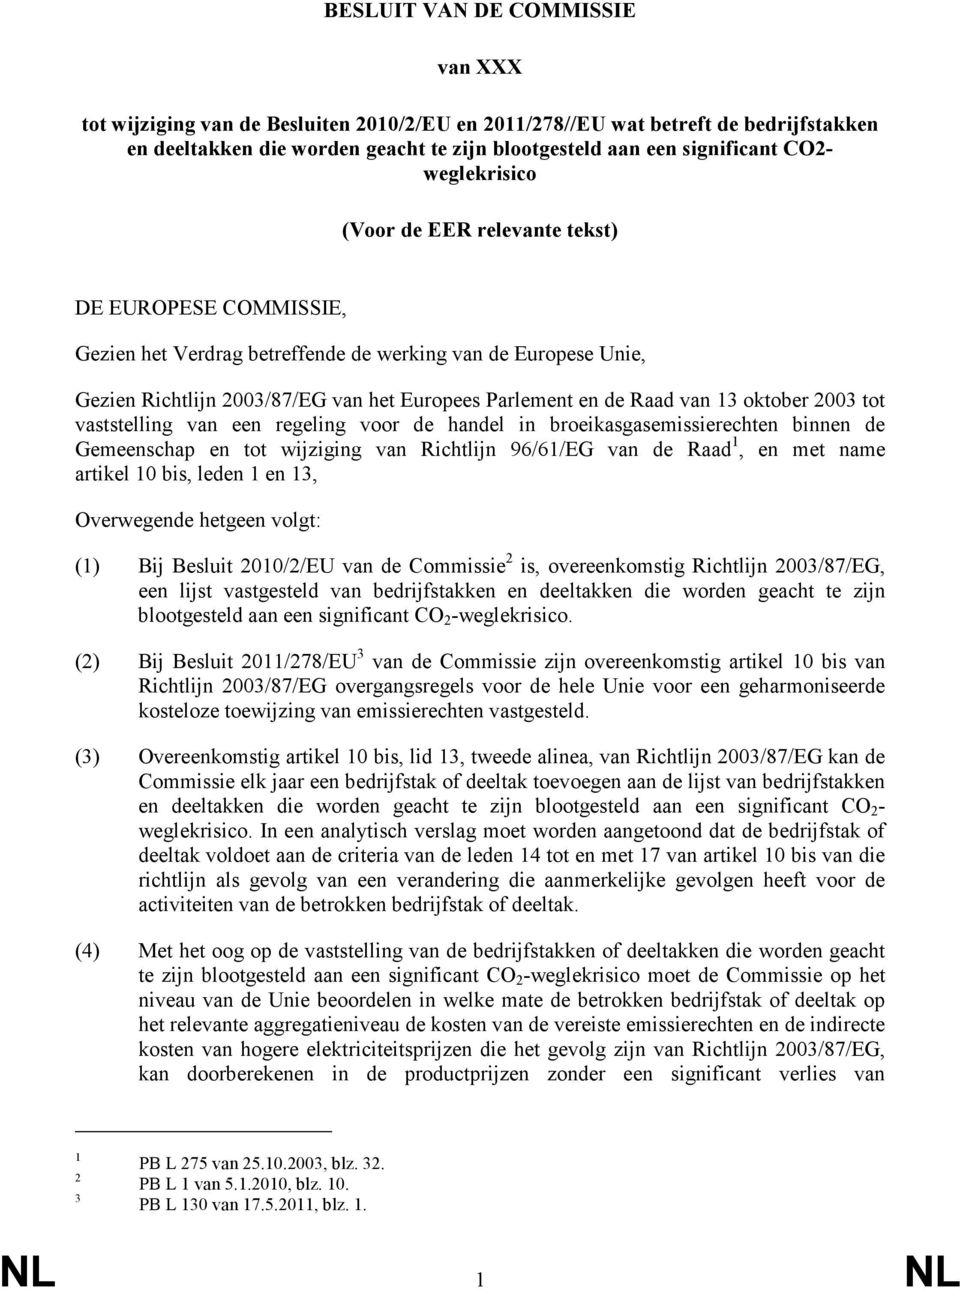 13 oktober 2003 tot vaststelling van een regeling voor de handel in broeikasgasemissierechten binnen de Gemeenschap en tot wijziging van Richtlijn 96/61/EG van de Raad 1, en met name artikel 10 bis,